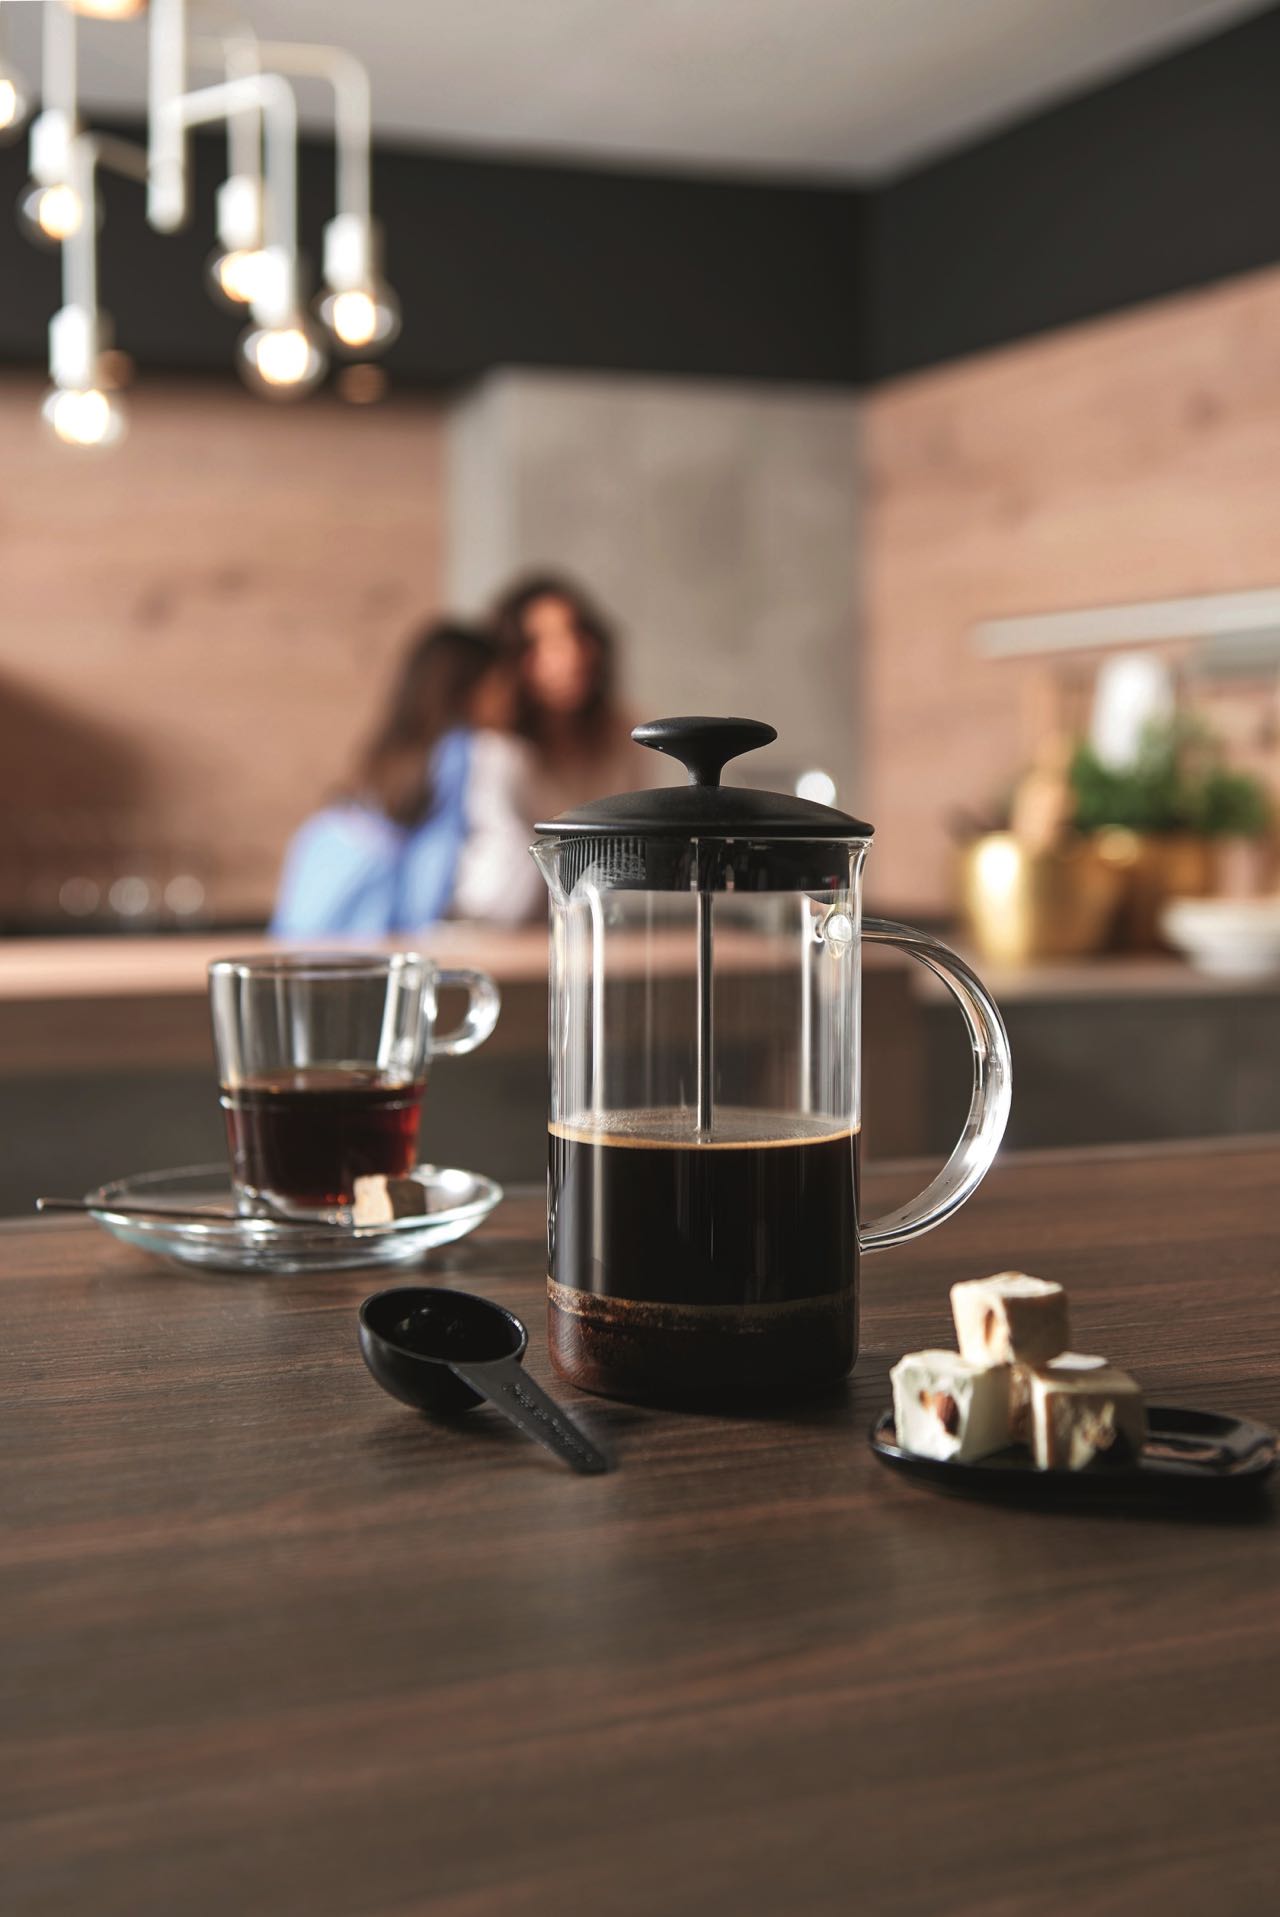 Fein ist der Kaffeegenuss aus der French Press „Caffé per me“ von Leonardo. Zur Kanne gehören ein schwarzer Deckel, ein Filter sowie ein schwarzer Löffel. Mit dem System lässt sich auf die Schnelle ein guter Kaffee aufbrühen.